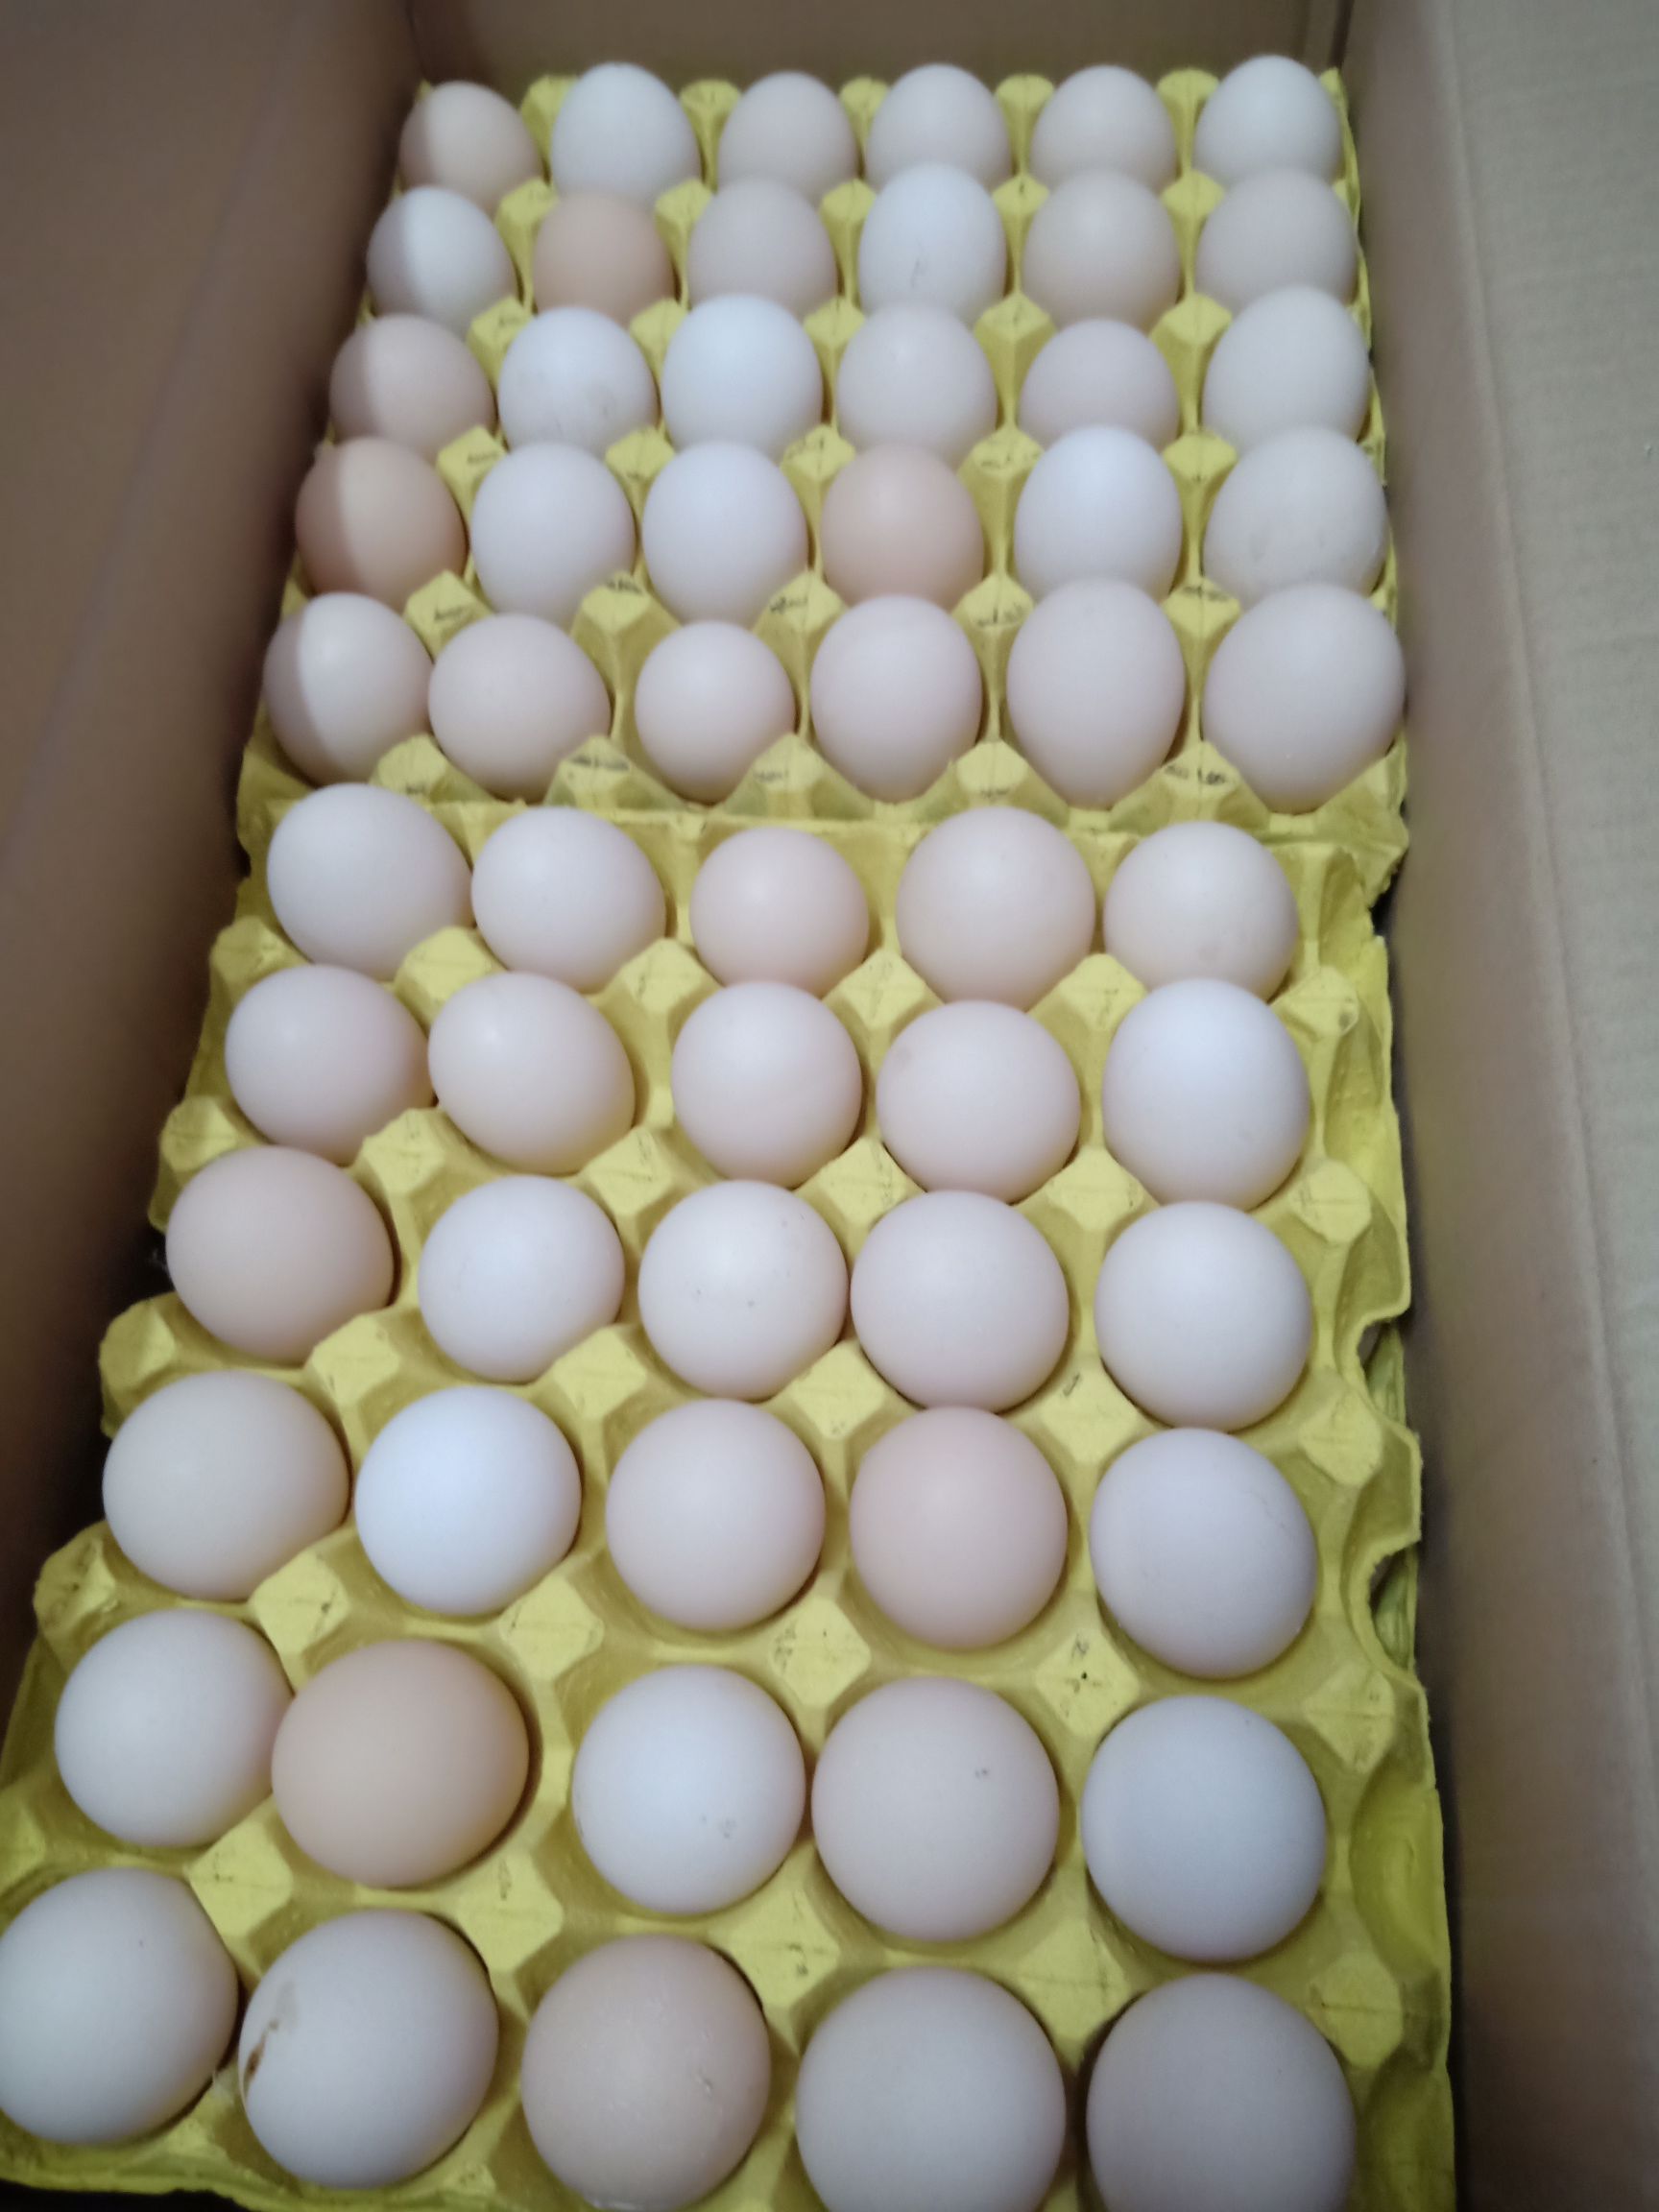 品种名:粉蛋 用途:食用 货品包装:箱装 蛋托类型:纸托 颜色